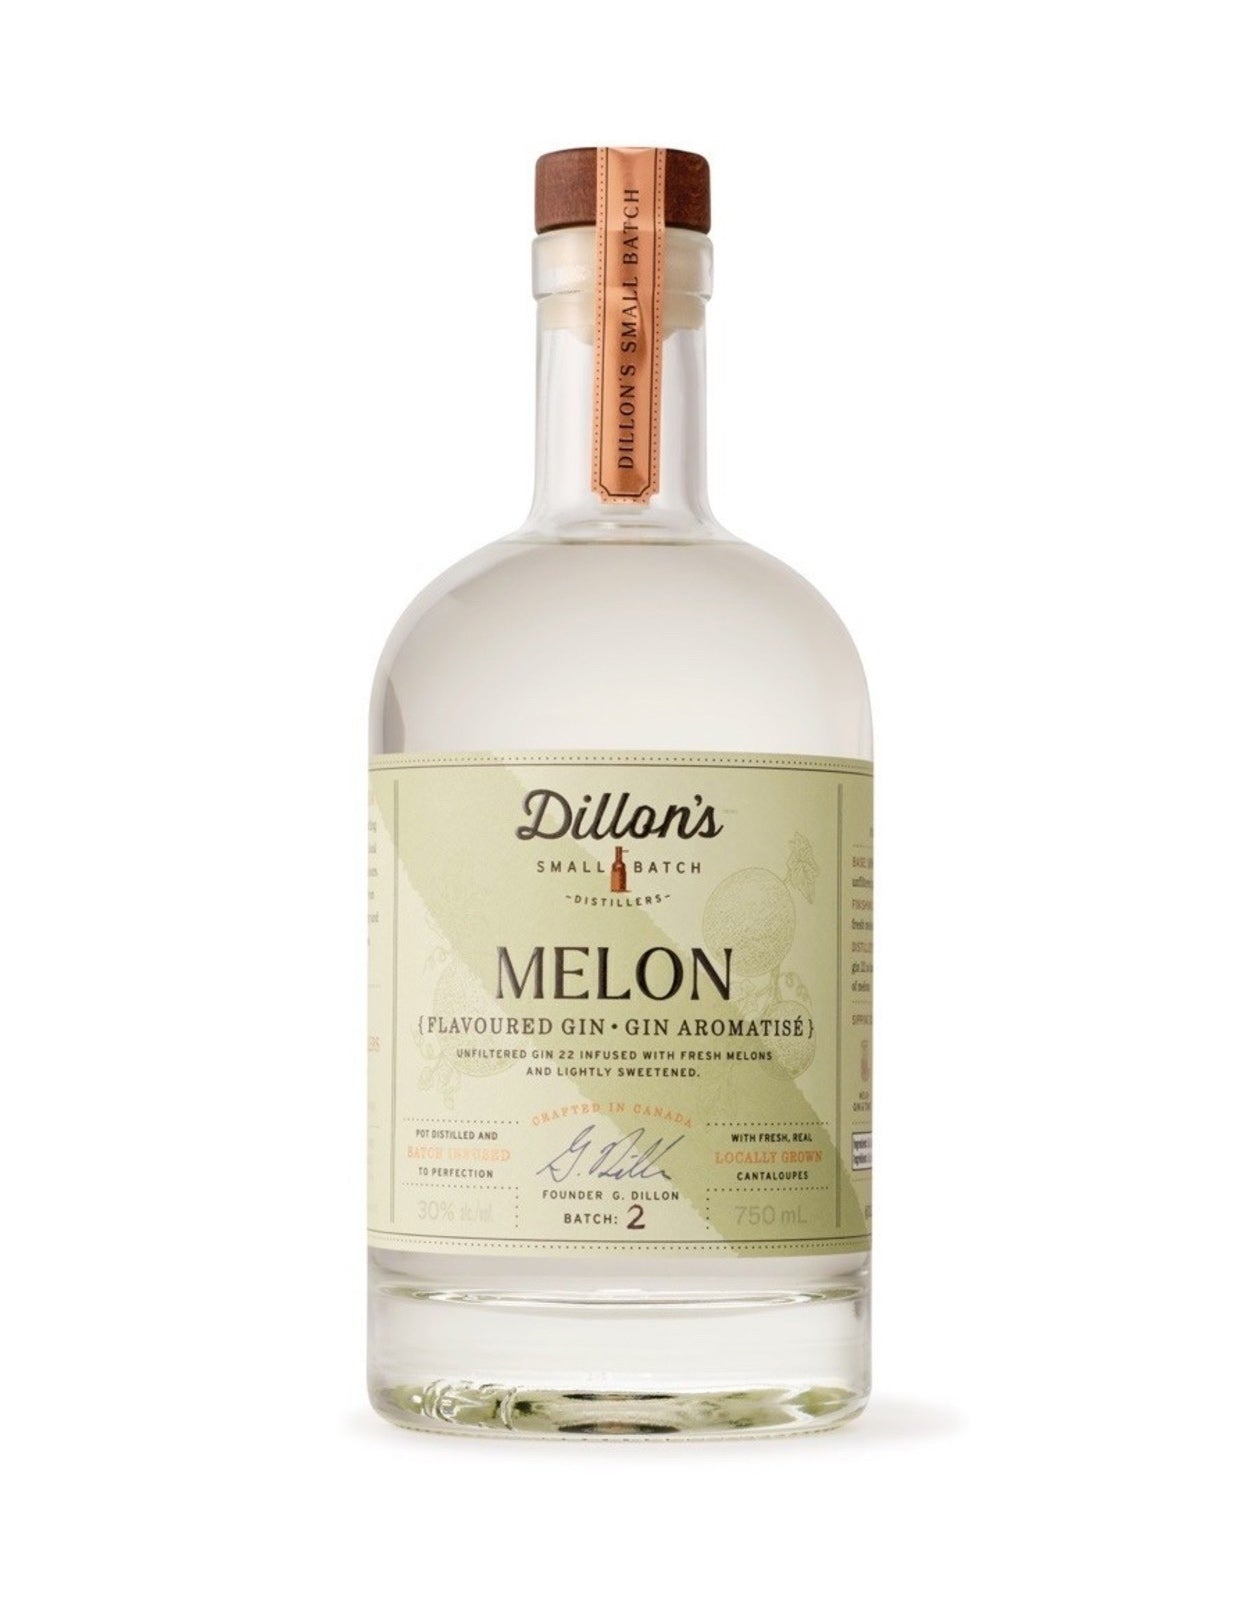 Dillon's Melon Gin